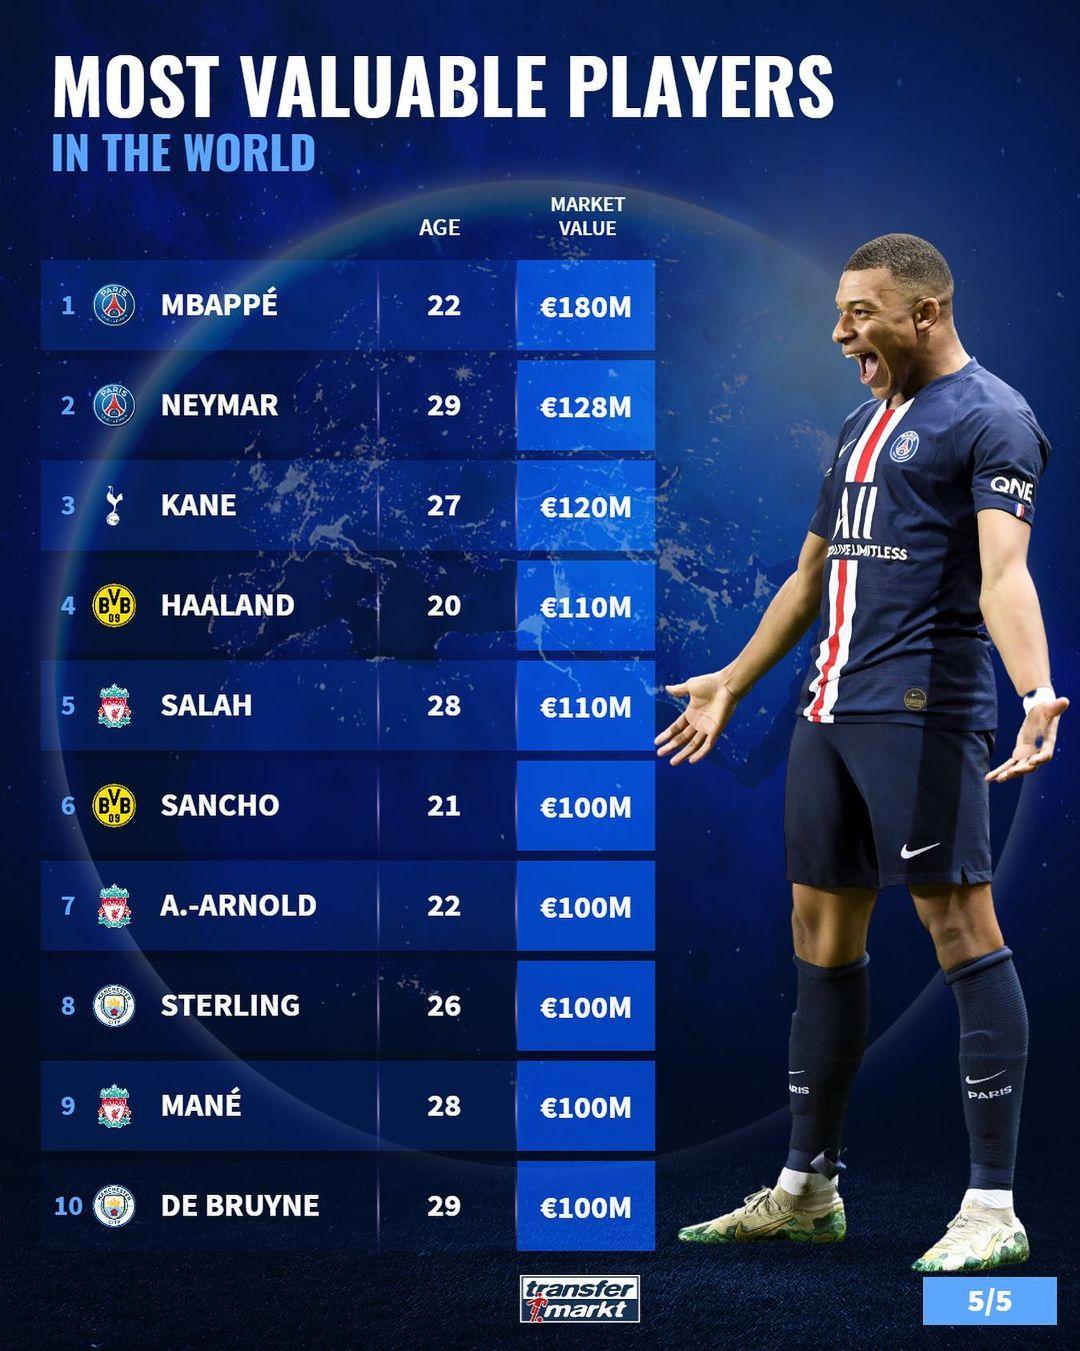 球员价值排行榜:姆巴佩以1.8亿欧元领先 内马尔和凯恩分列第二和第三